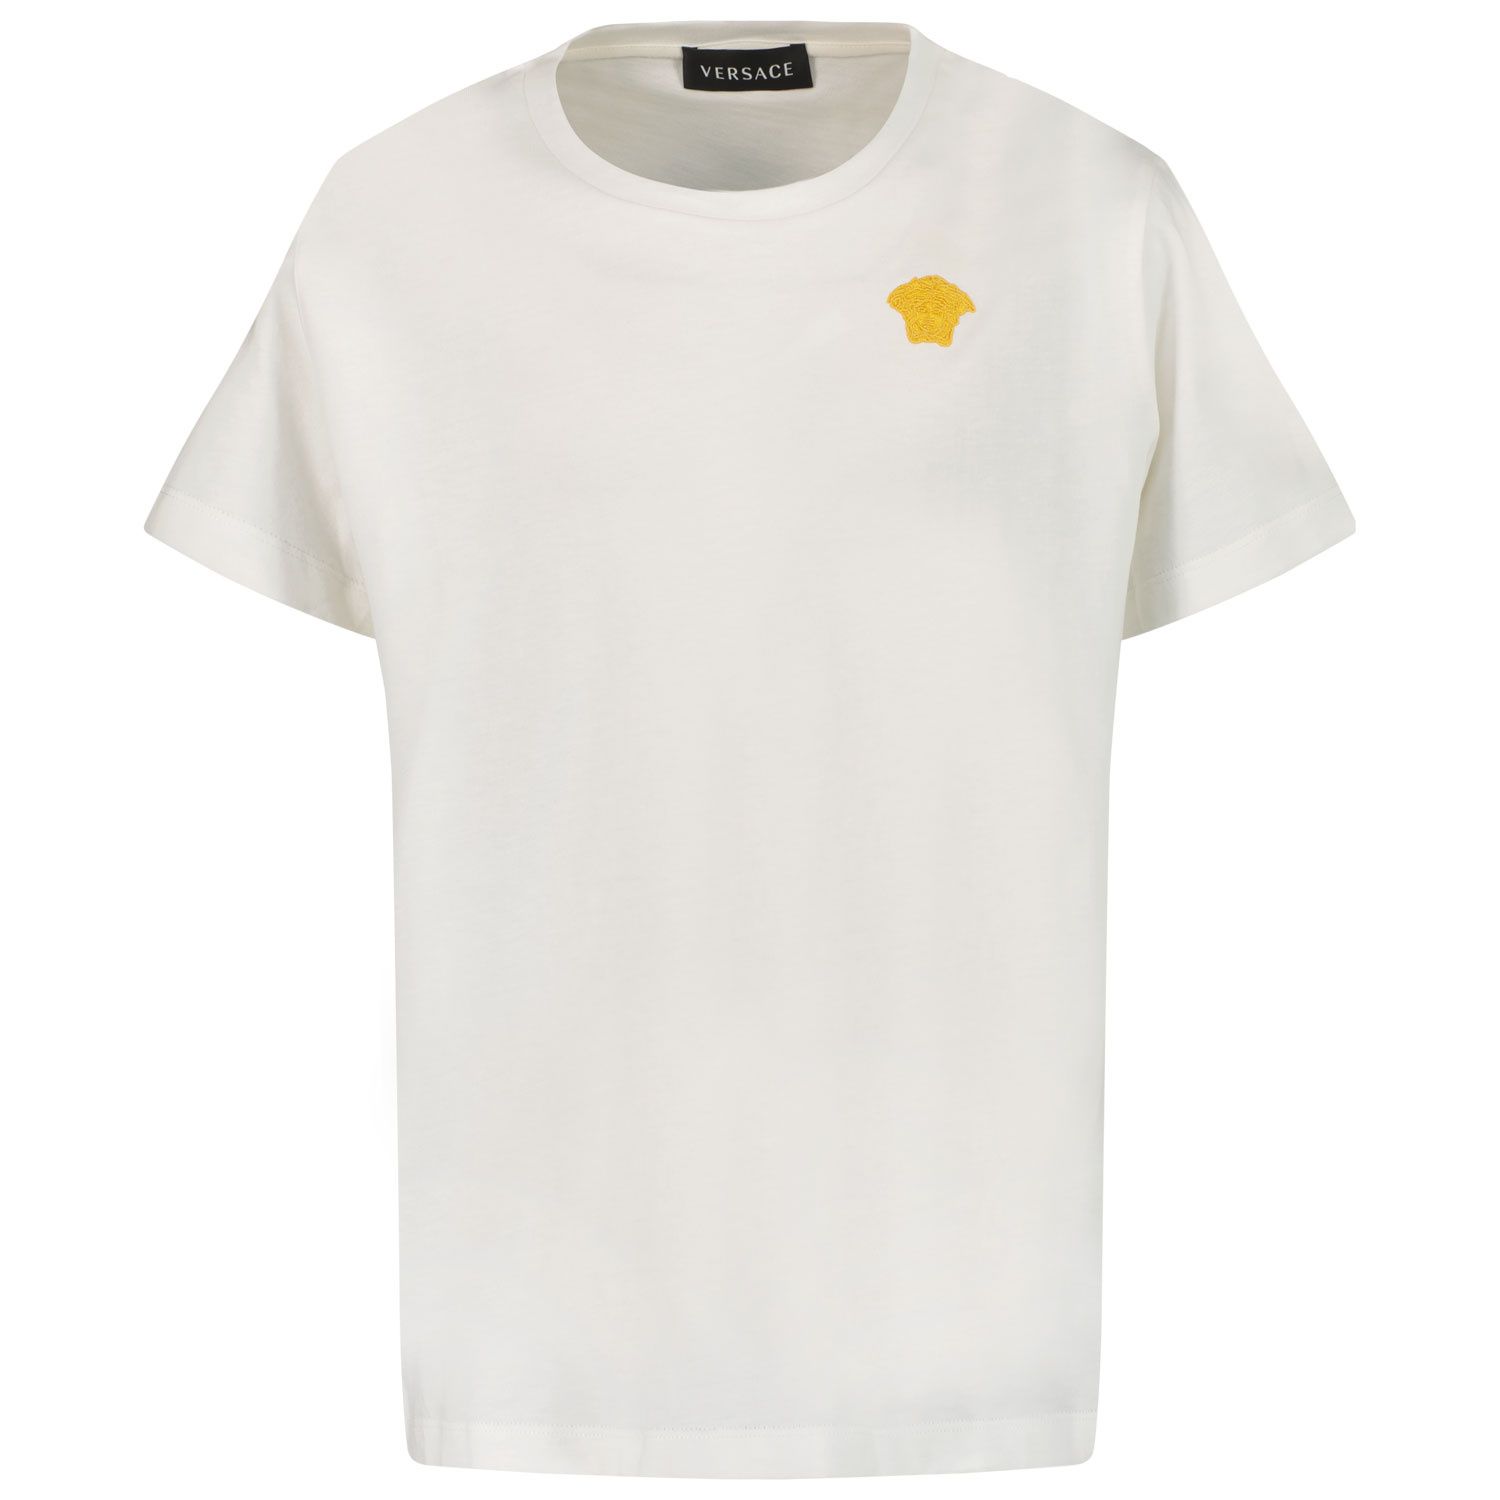 Afbeelding van Versace 1000239 1A03019 kinder t-shirt wit